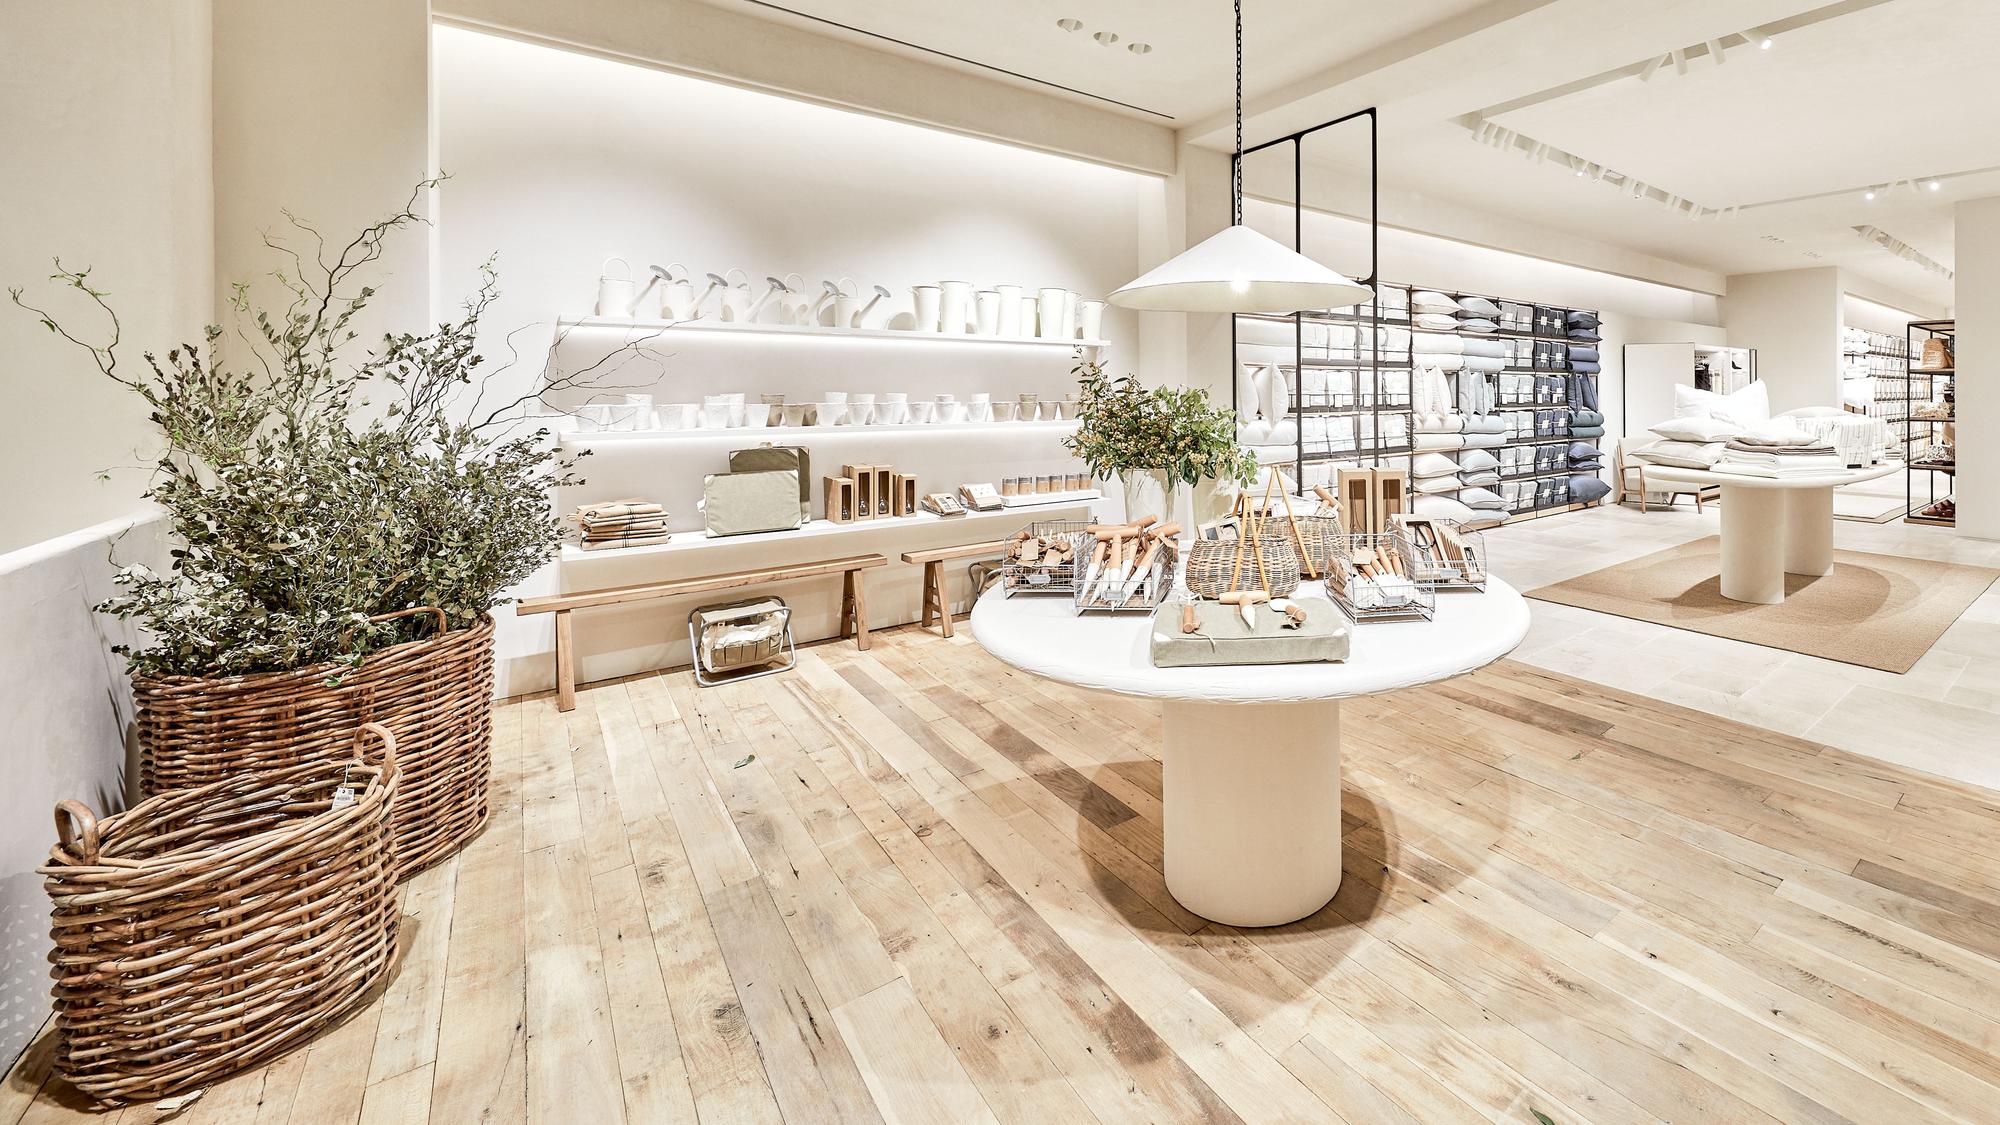 Zara Home reconvierte su tienda enseña en Barcelona - El Periódico